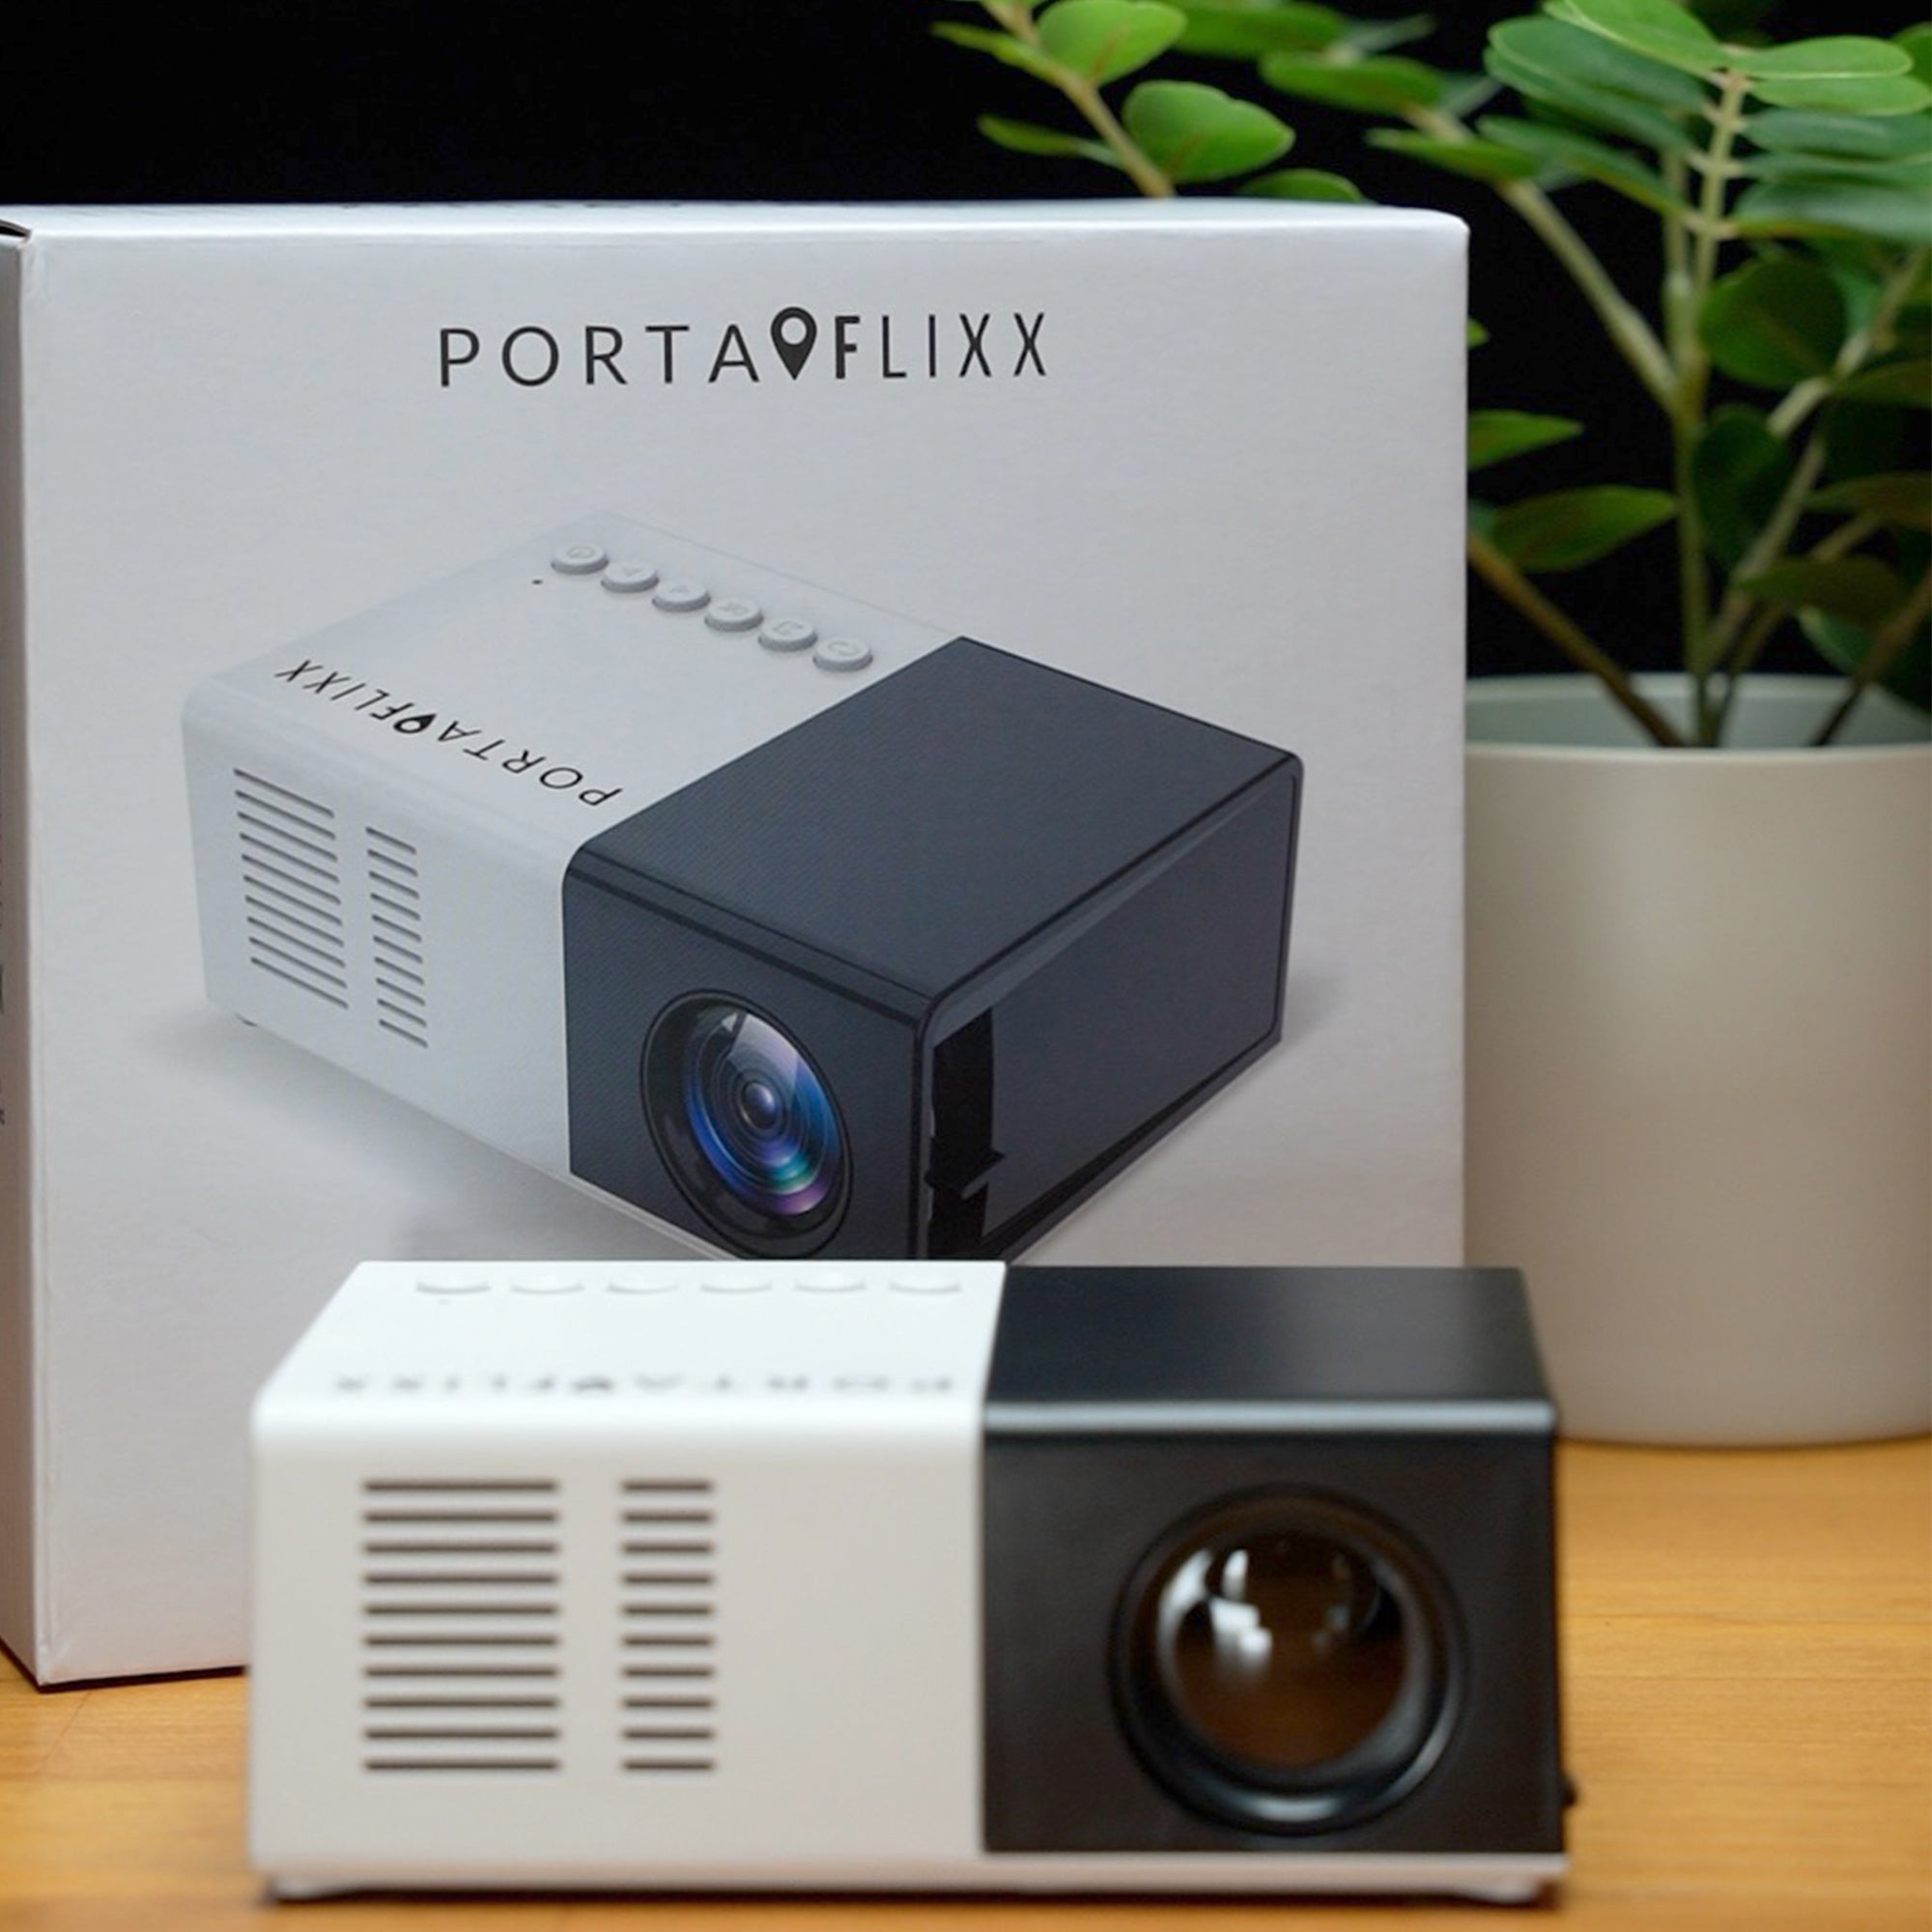 Portaflixx™ Pocket Projector US/CA